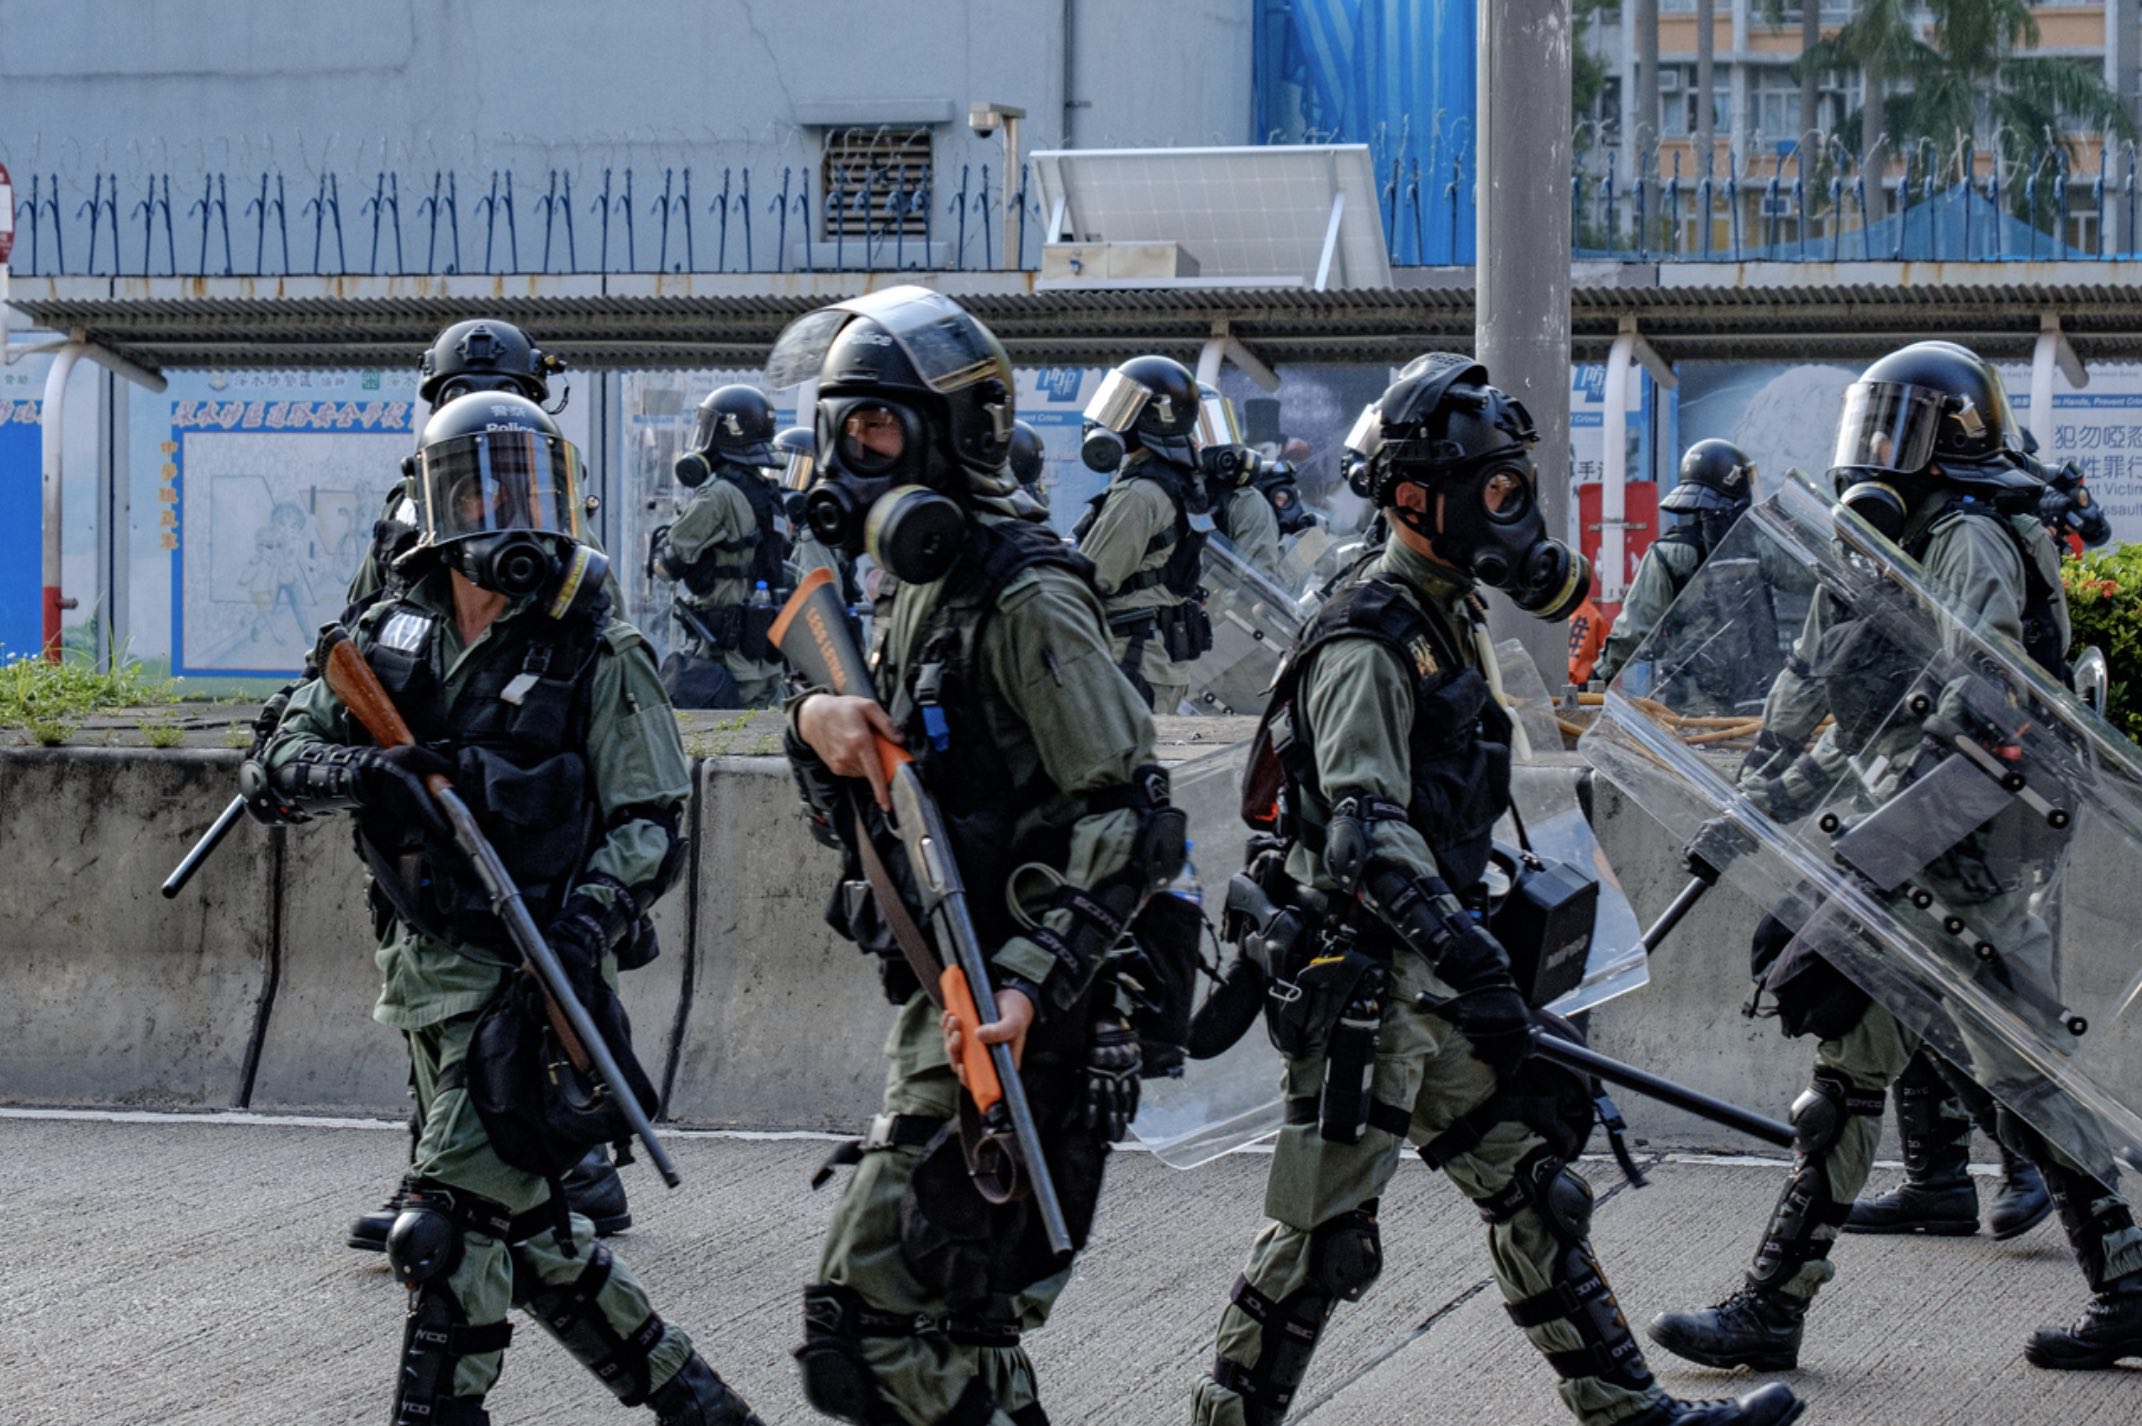 Riot police in Sham Shui Po, October 1, 2019. Photo via Coconuts Media.